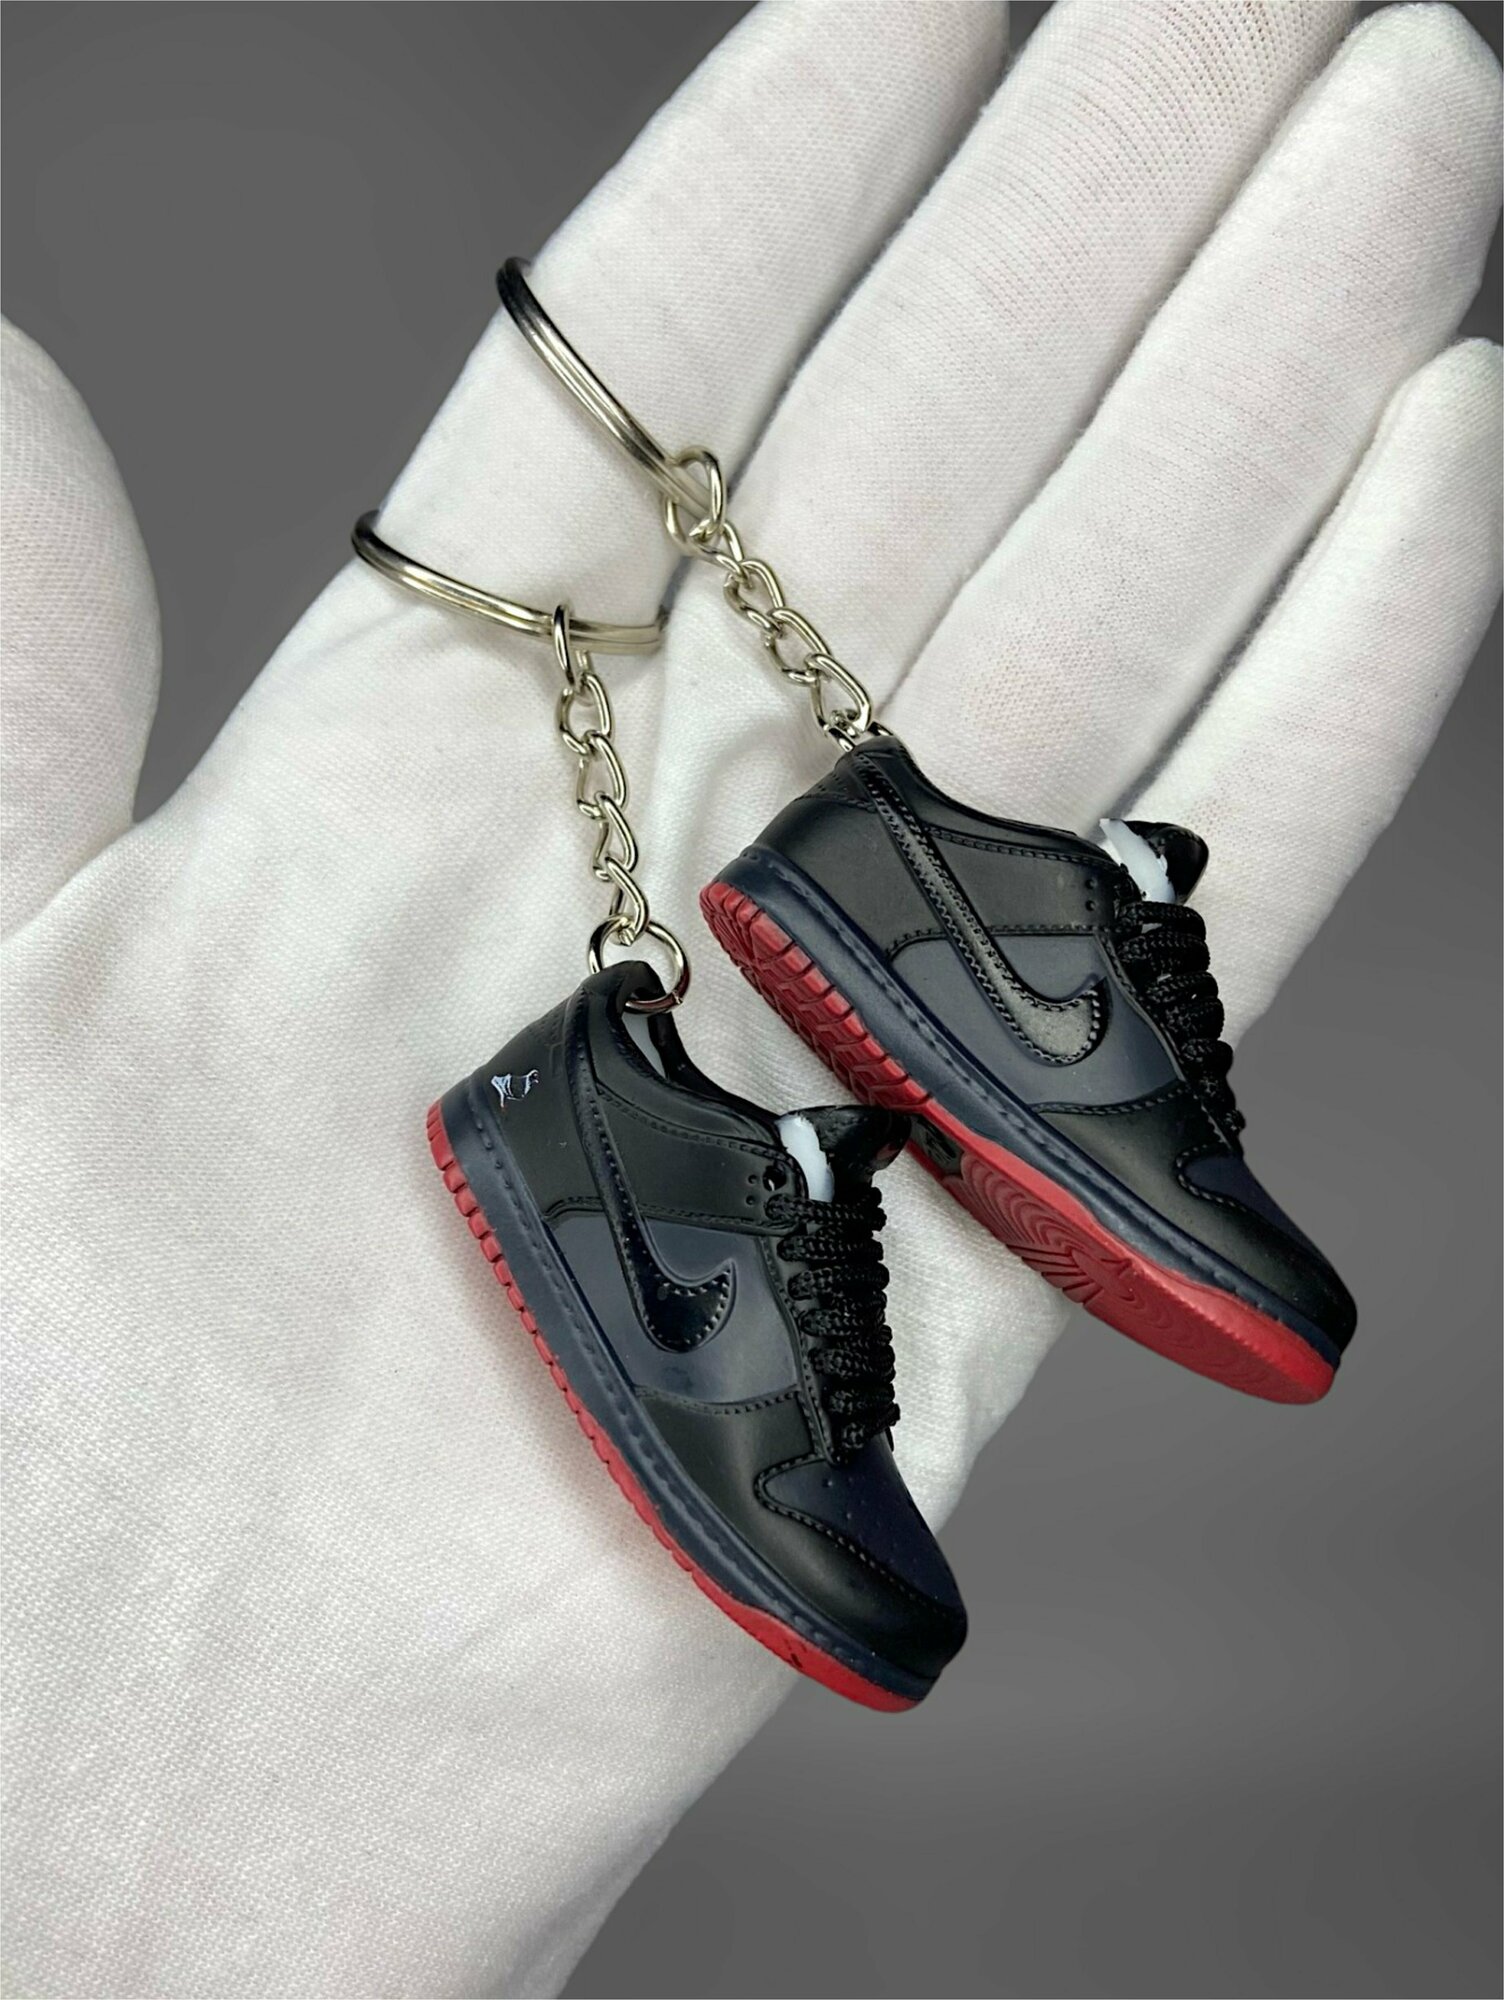 Брелок кроссовок Nike красно-черный 555777-010 (R)